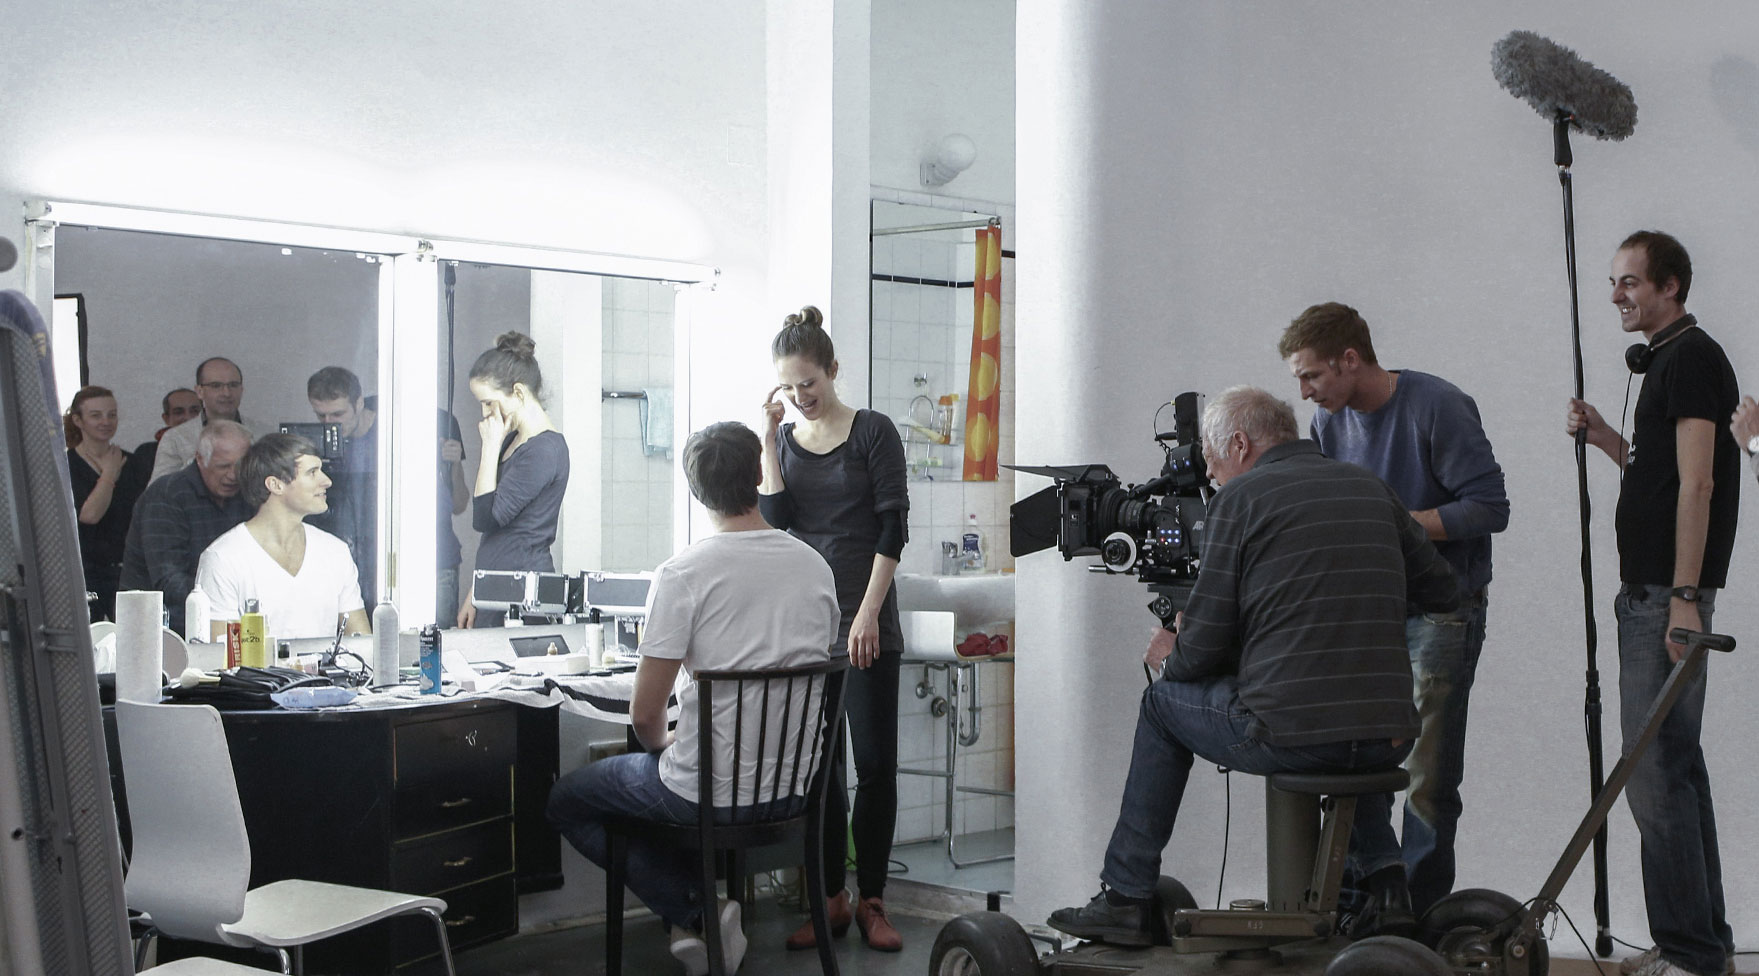 Studio mieten in Wien für Fotografie, Film, Castings, Coachings, Workshops: FOTOLOFT WIEN